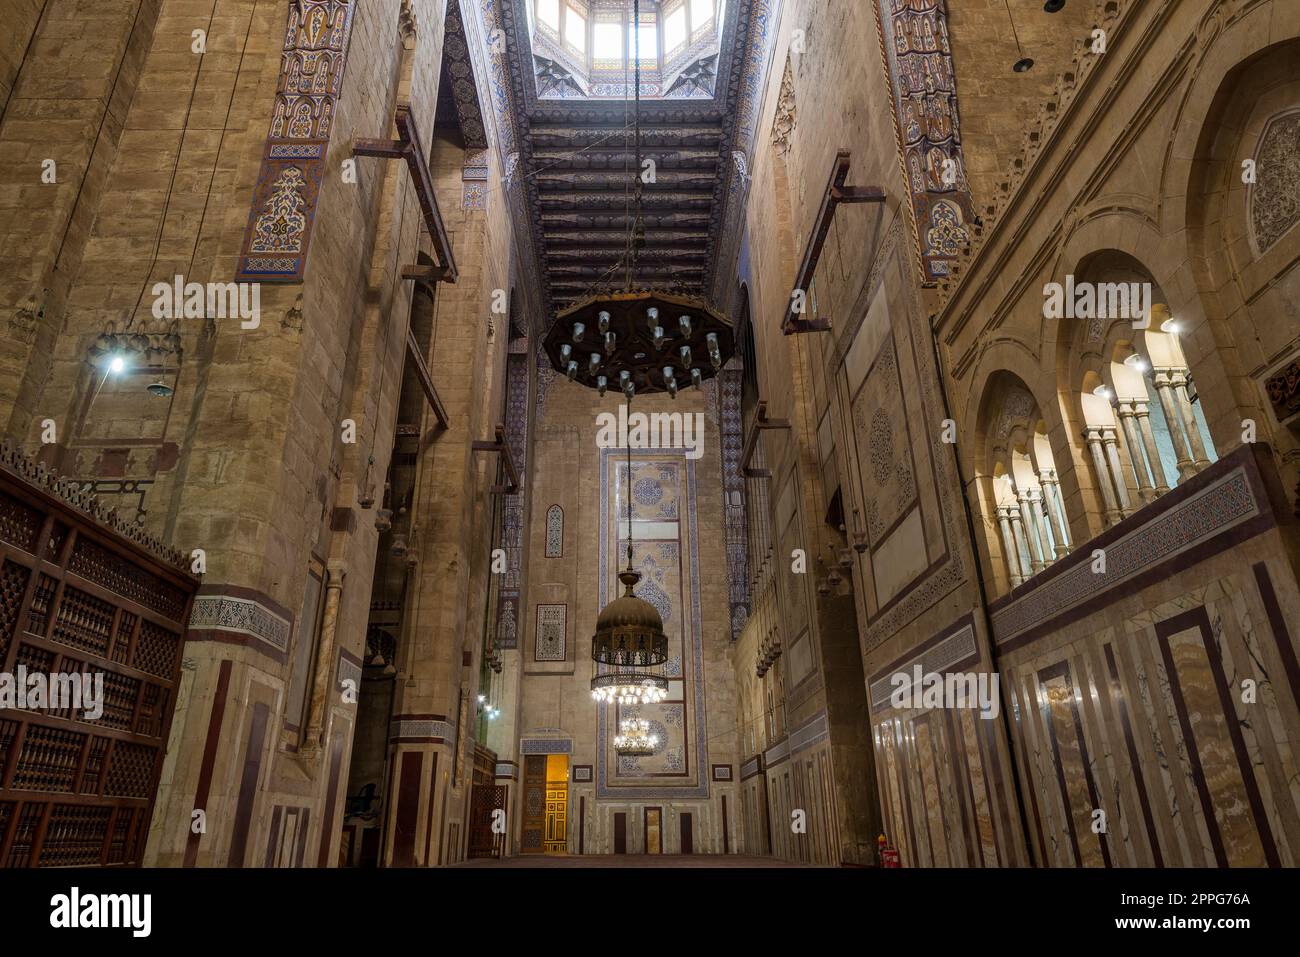 Interno della moschea di al Refai con vecchi mattoni decorati, pareti in pietra e decorazioni in marmo colorato, Cairo, Egitto Foto Stock